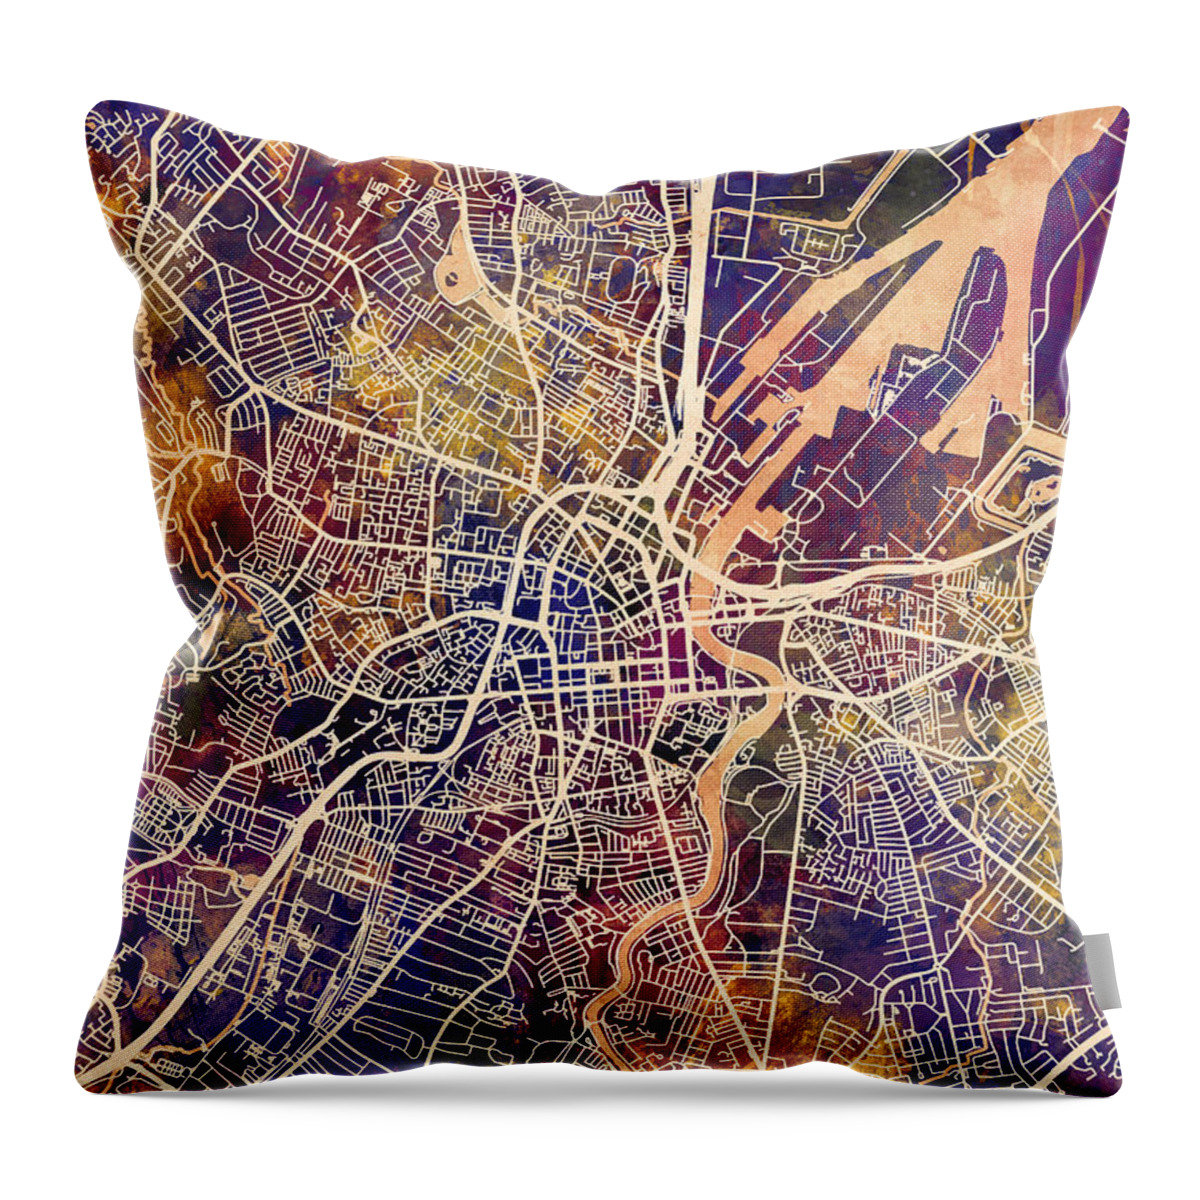 Belfast Throw Pillow featuring the digital art Belfast Northern Ireland City Map by Michael Tompsett